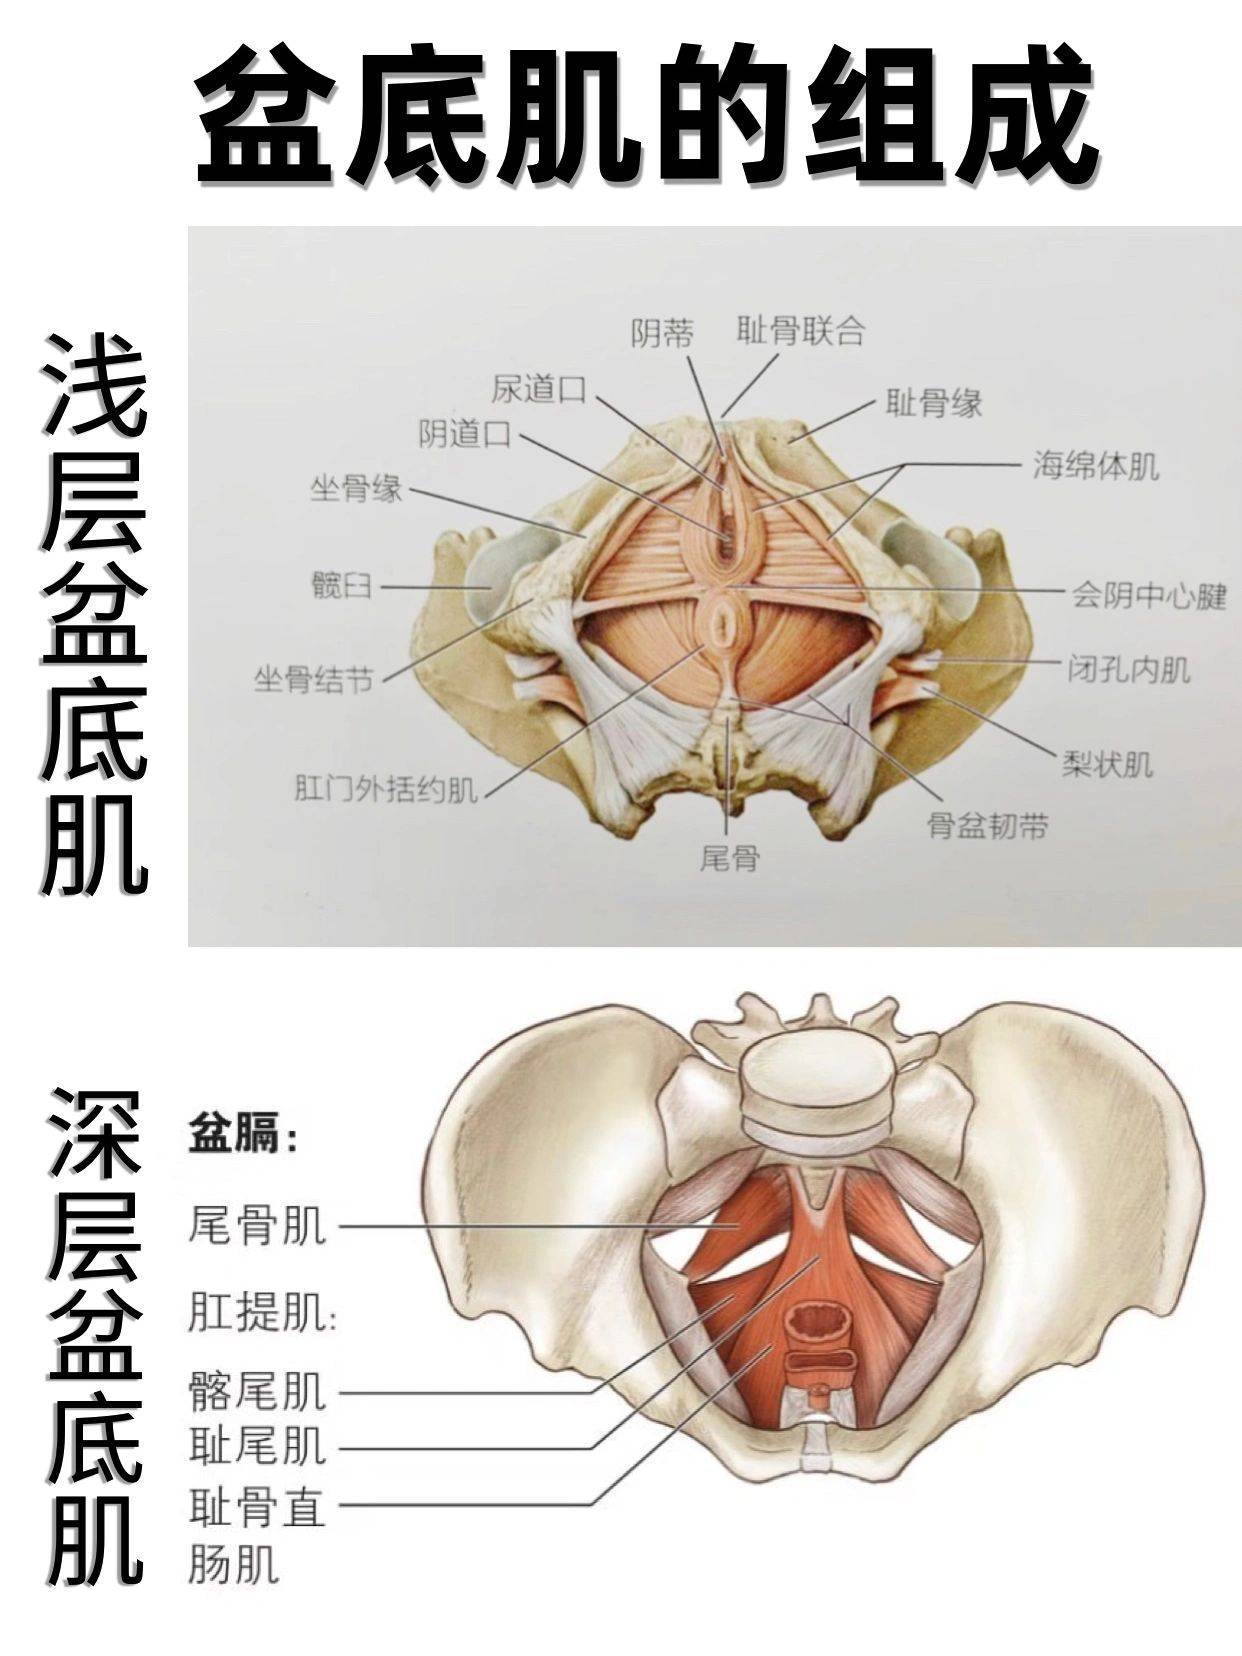 盆底肌解剖图3d图片